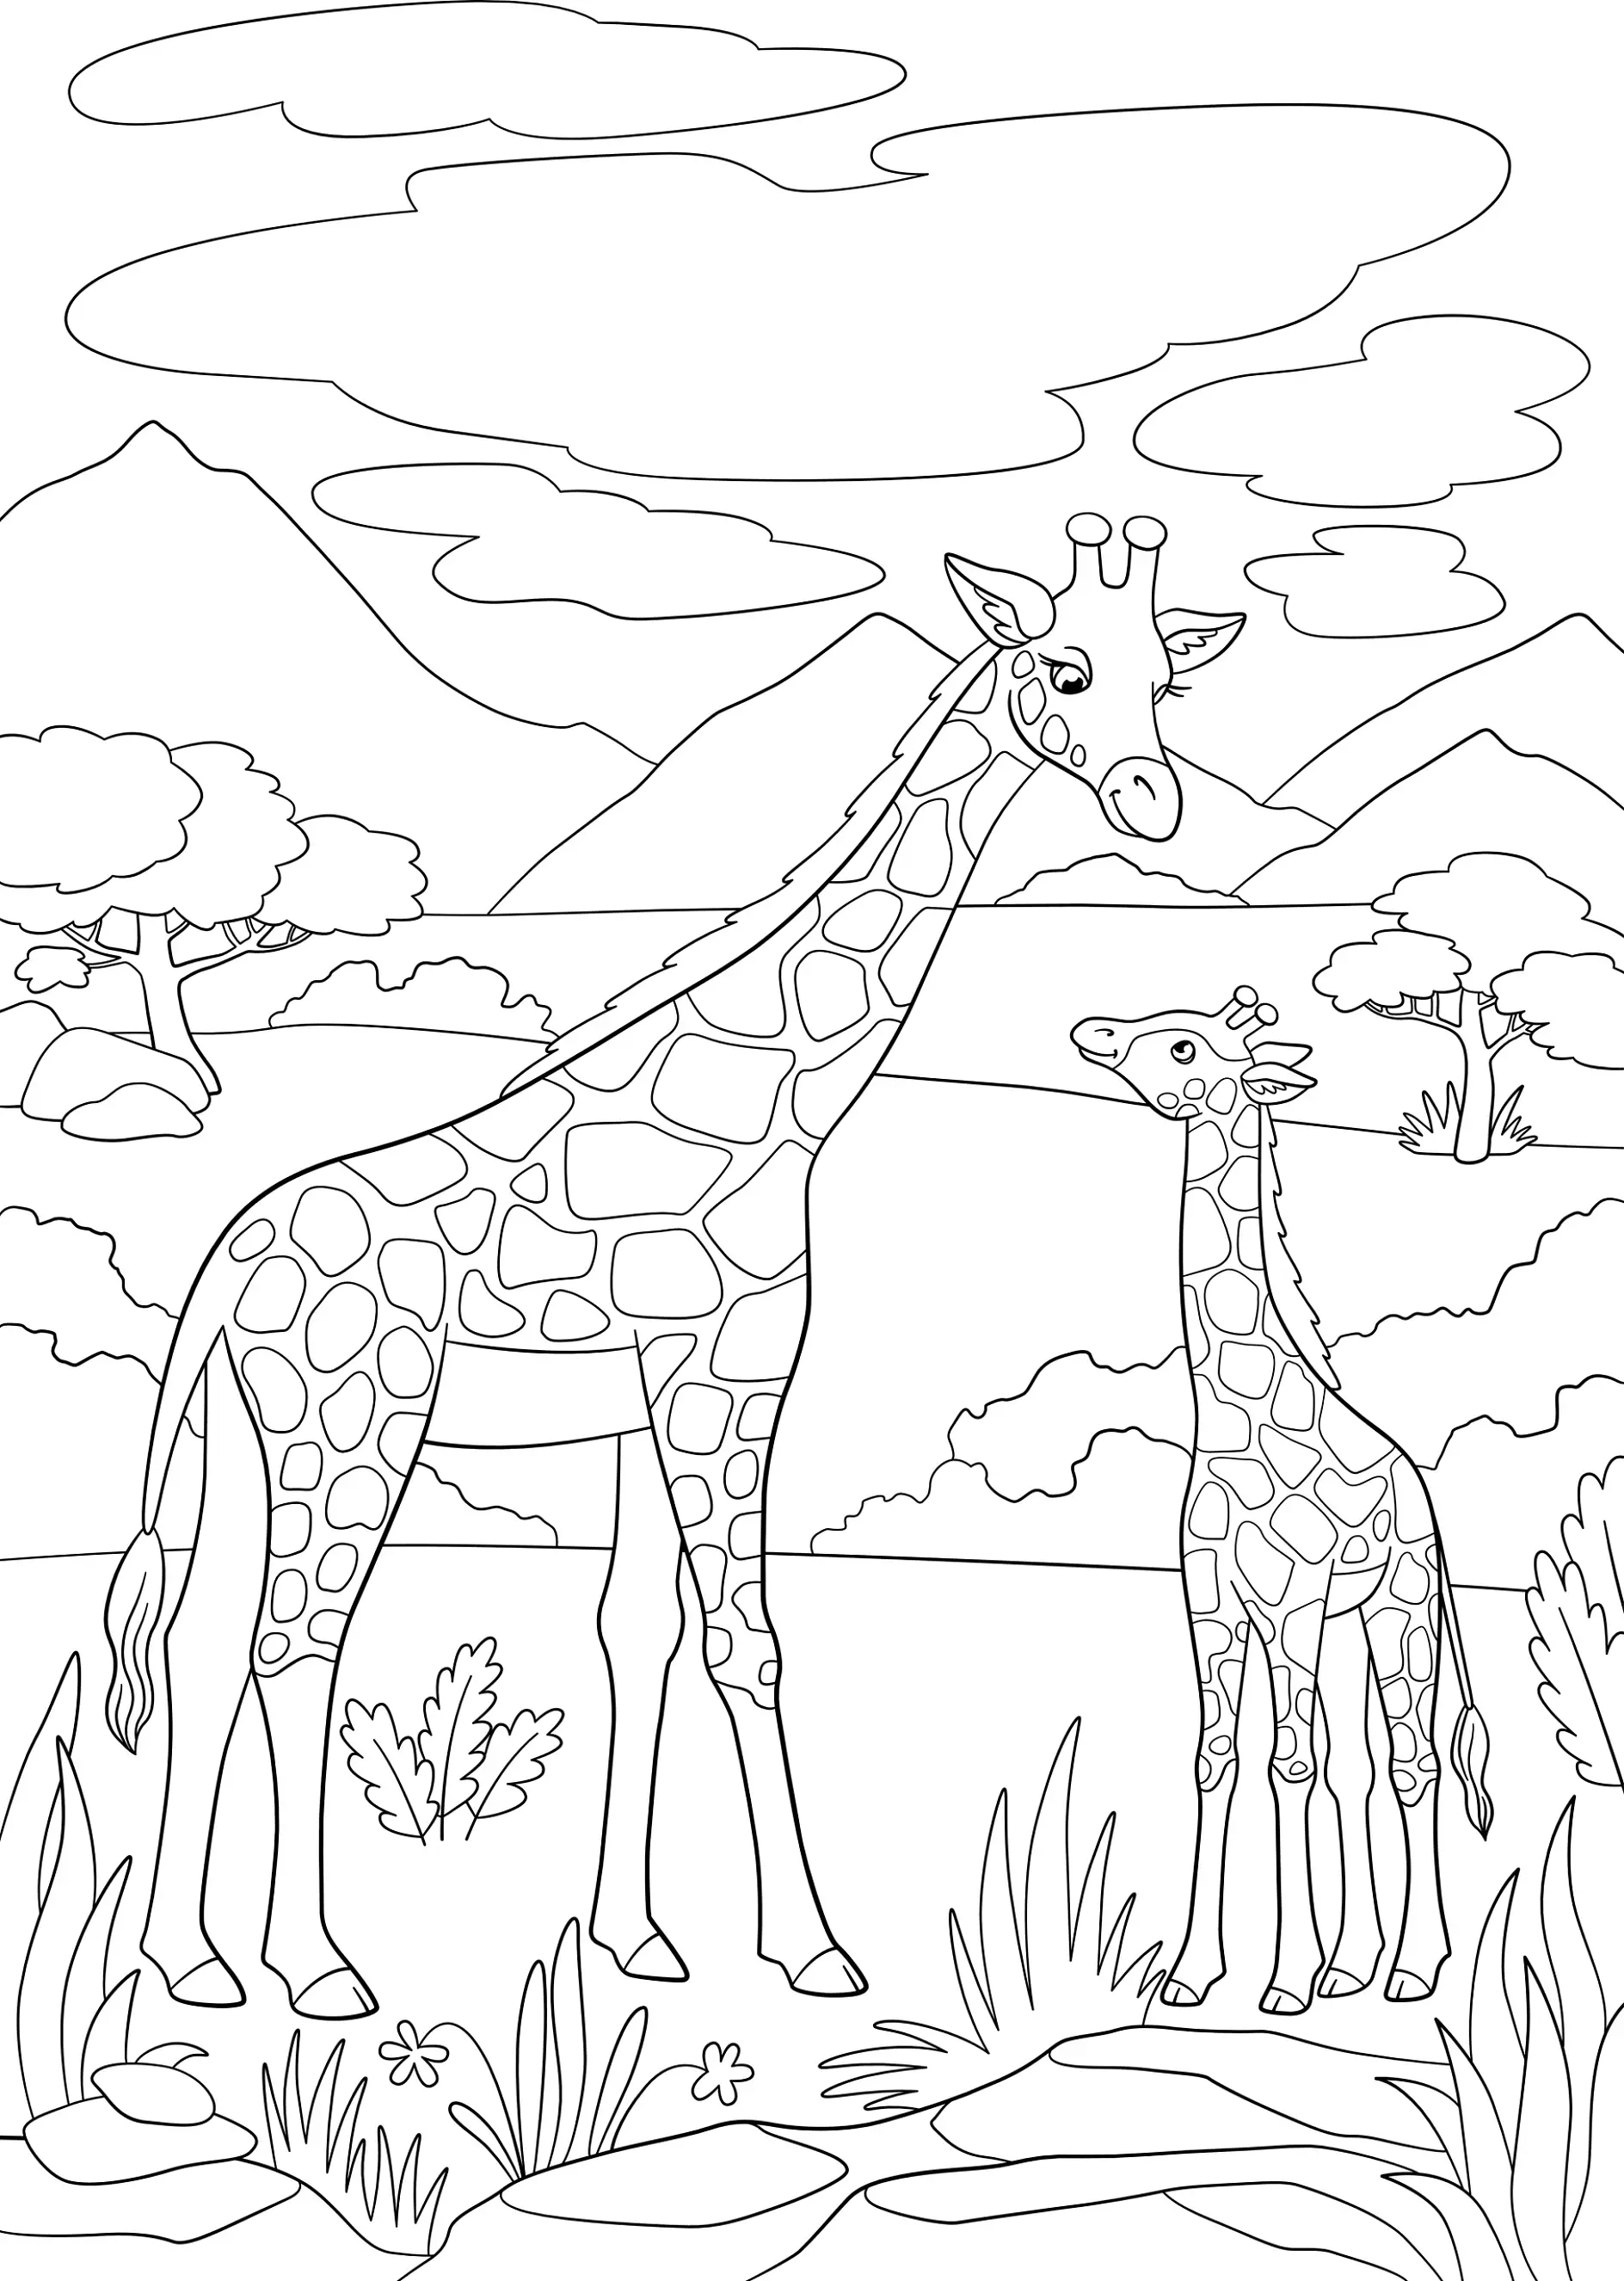 Ausmalbild Giraffen stehen in einer Landschaft mit Bergen